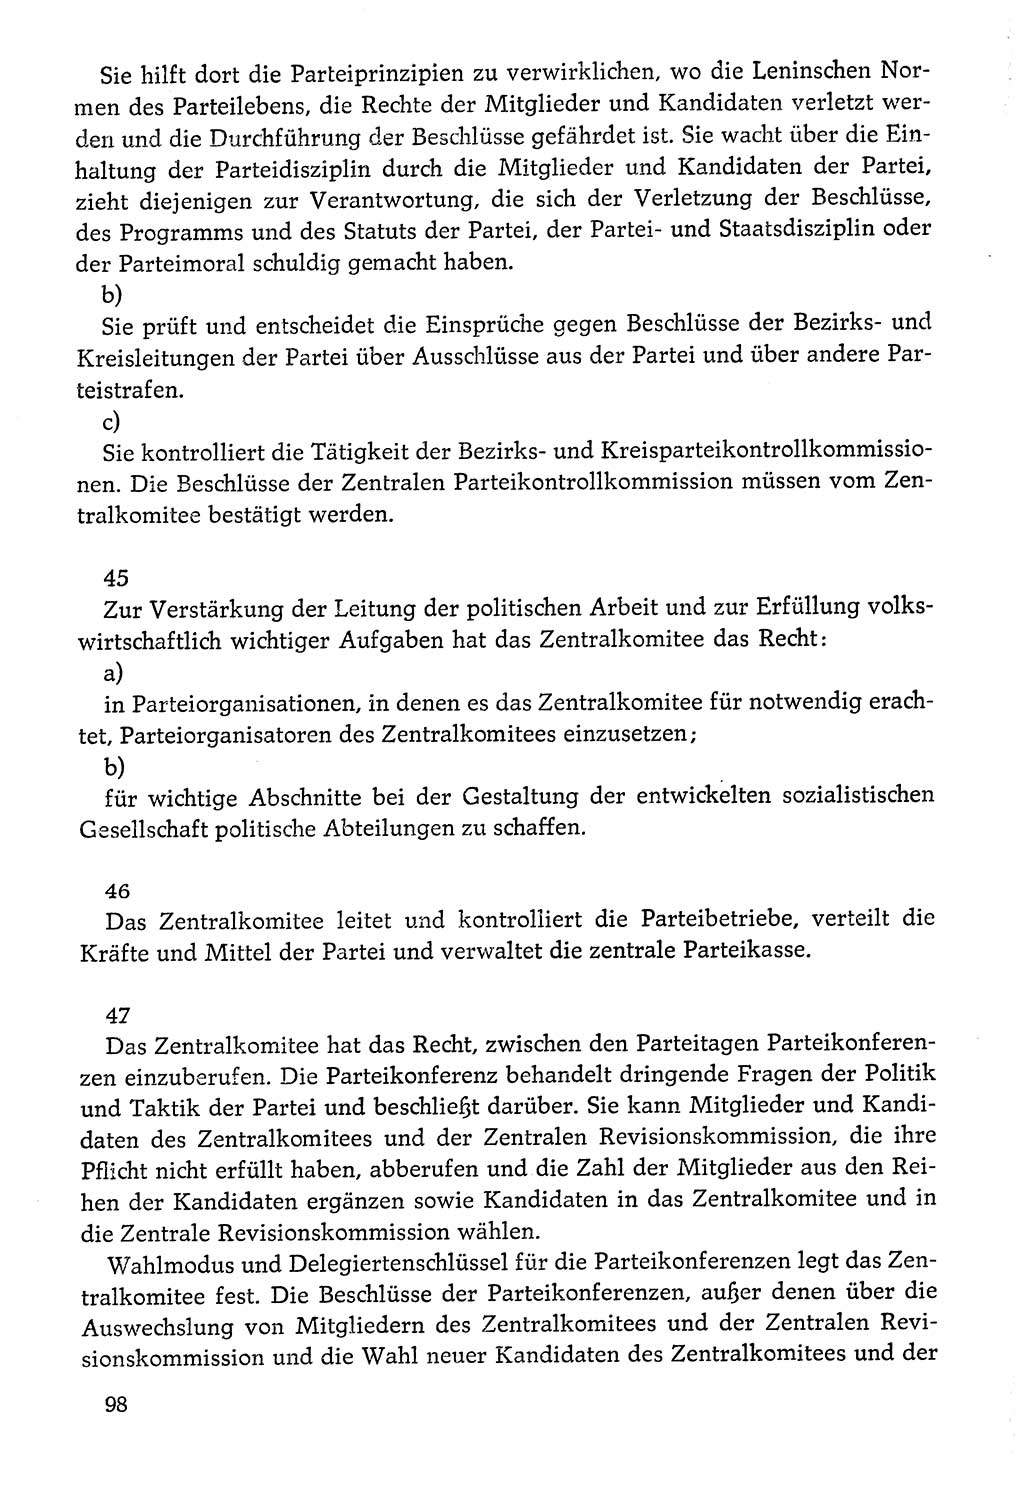 Dokumente der Sozialistischen Einheitspartei Deutschlands (SED) [Deutsche Demokratische Republik (DDR)] 1976-1977, Seite 98 (Dok. SED DDR 1976-1977, S. 98)